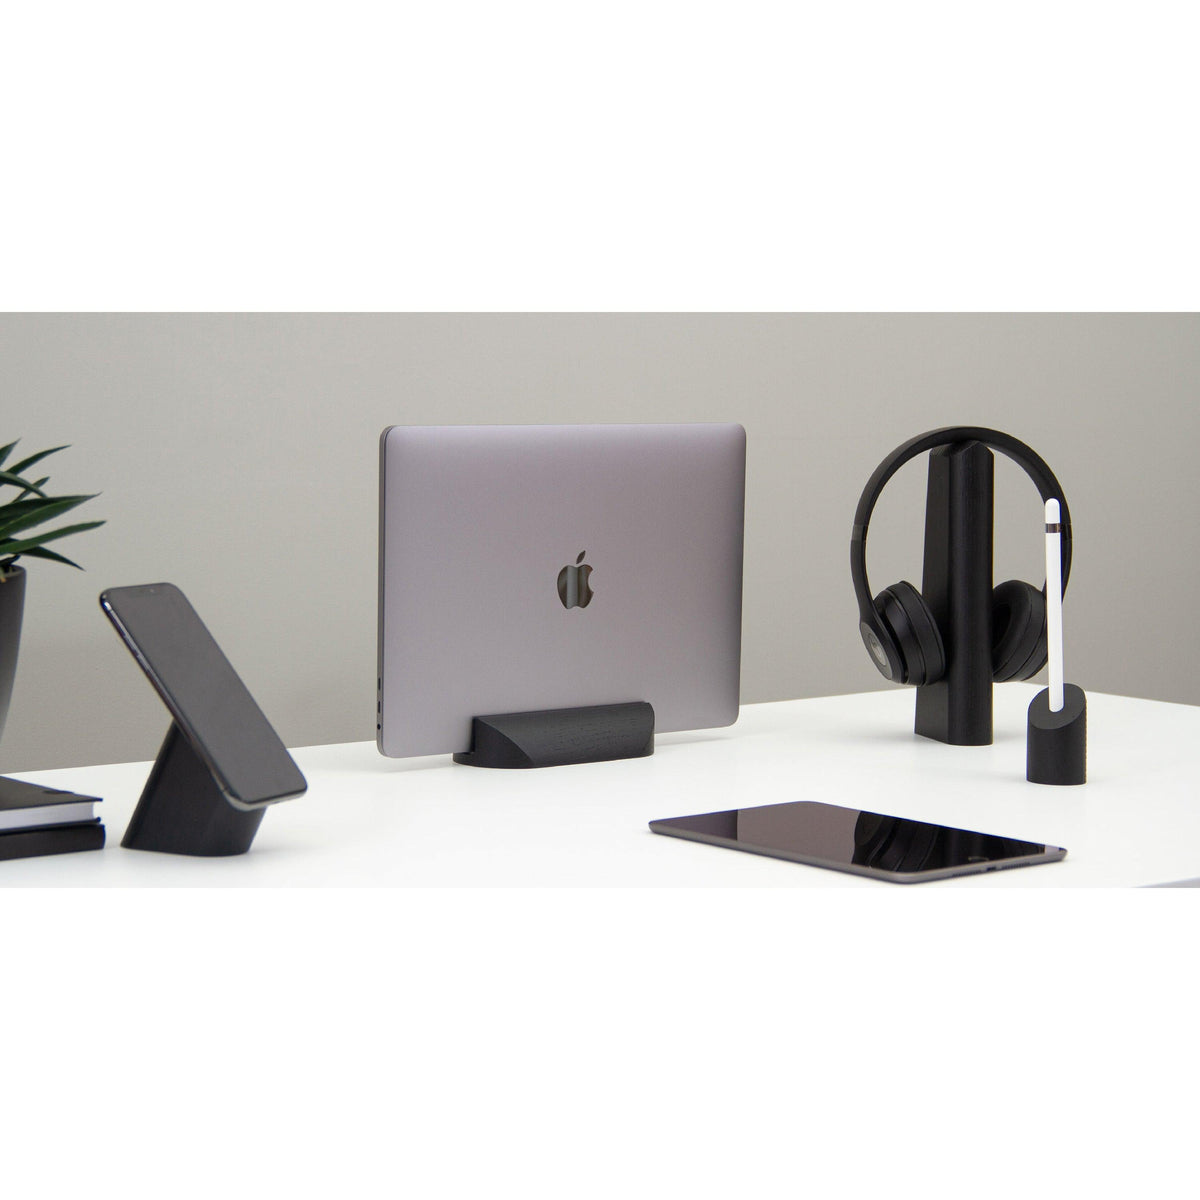 Set de 4 supports pour mobile, ordinateur portable, écouteurs &amp; Apple Pencil - 37+ Design